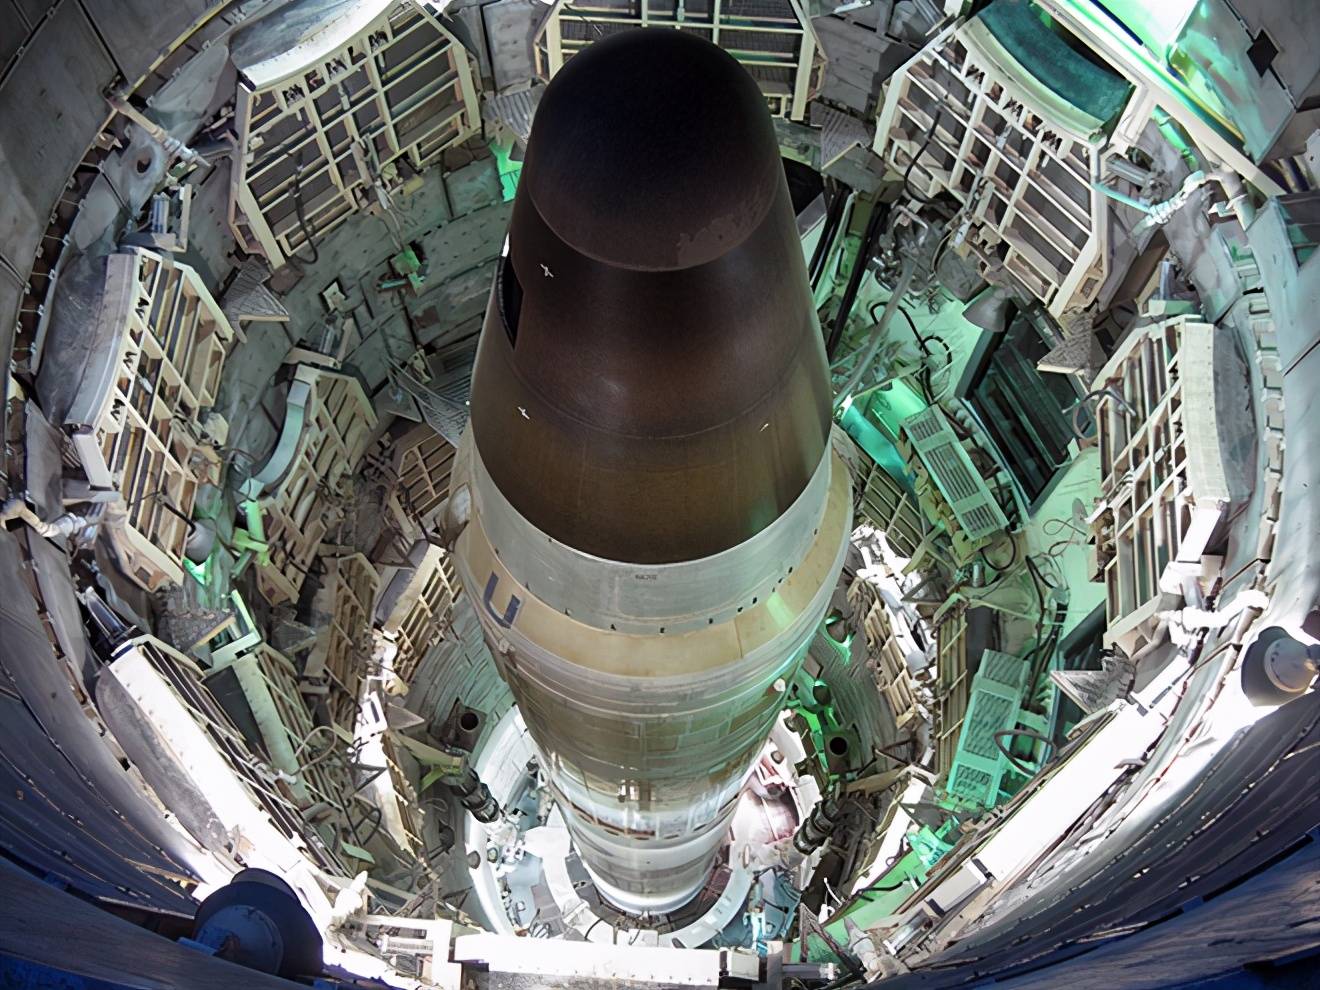 萨尔马特洲际导弹,为美国量身定做,18万公里射程绕过南北极